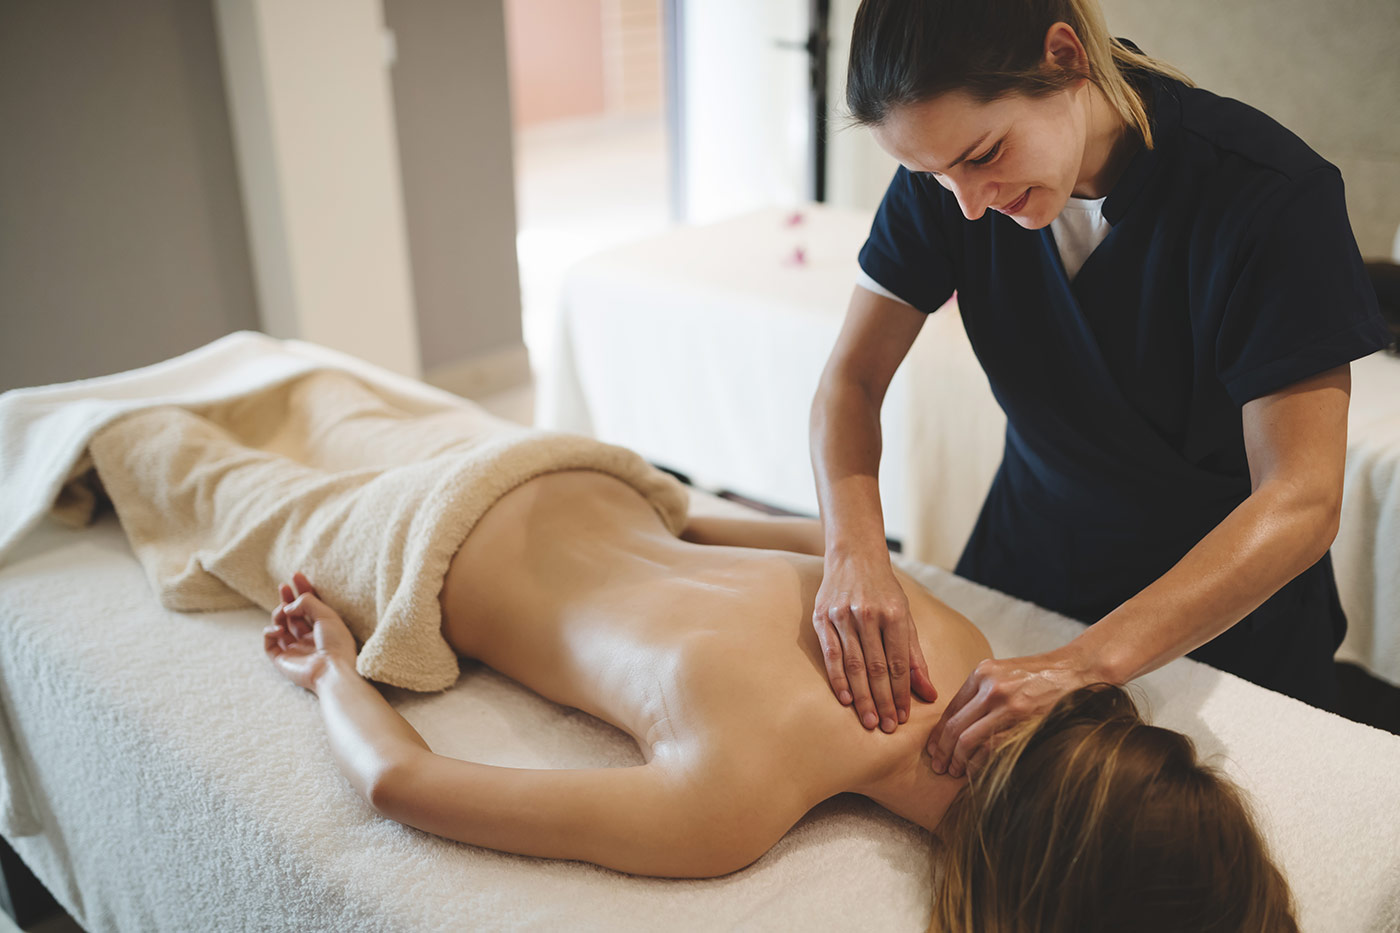 Introbild Fachpraktiker für Massage, Wellness und Prävention